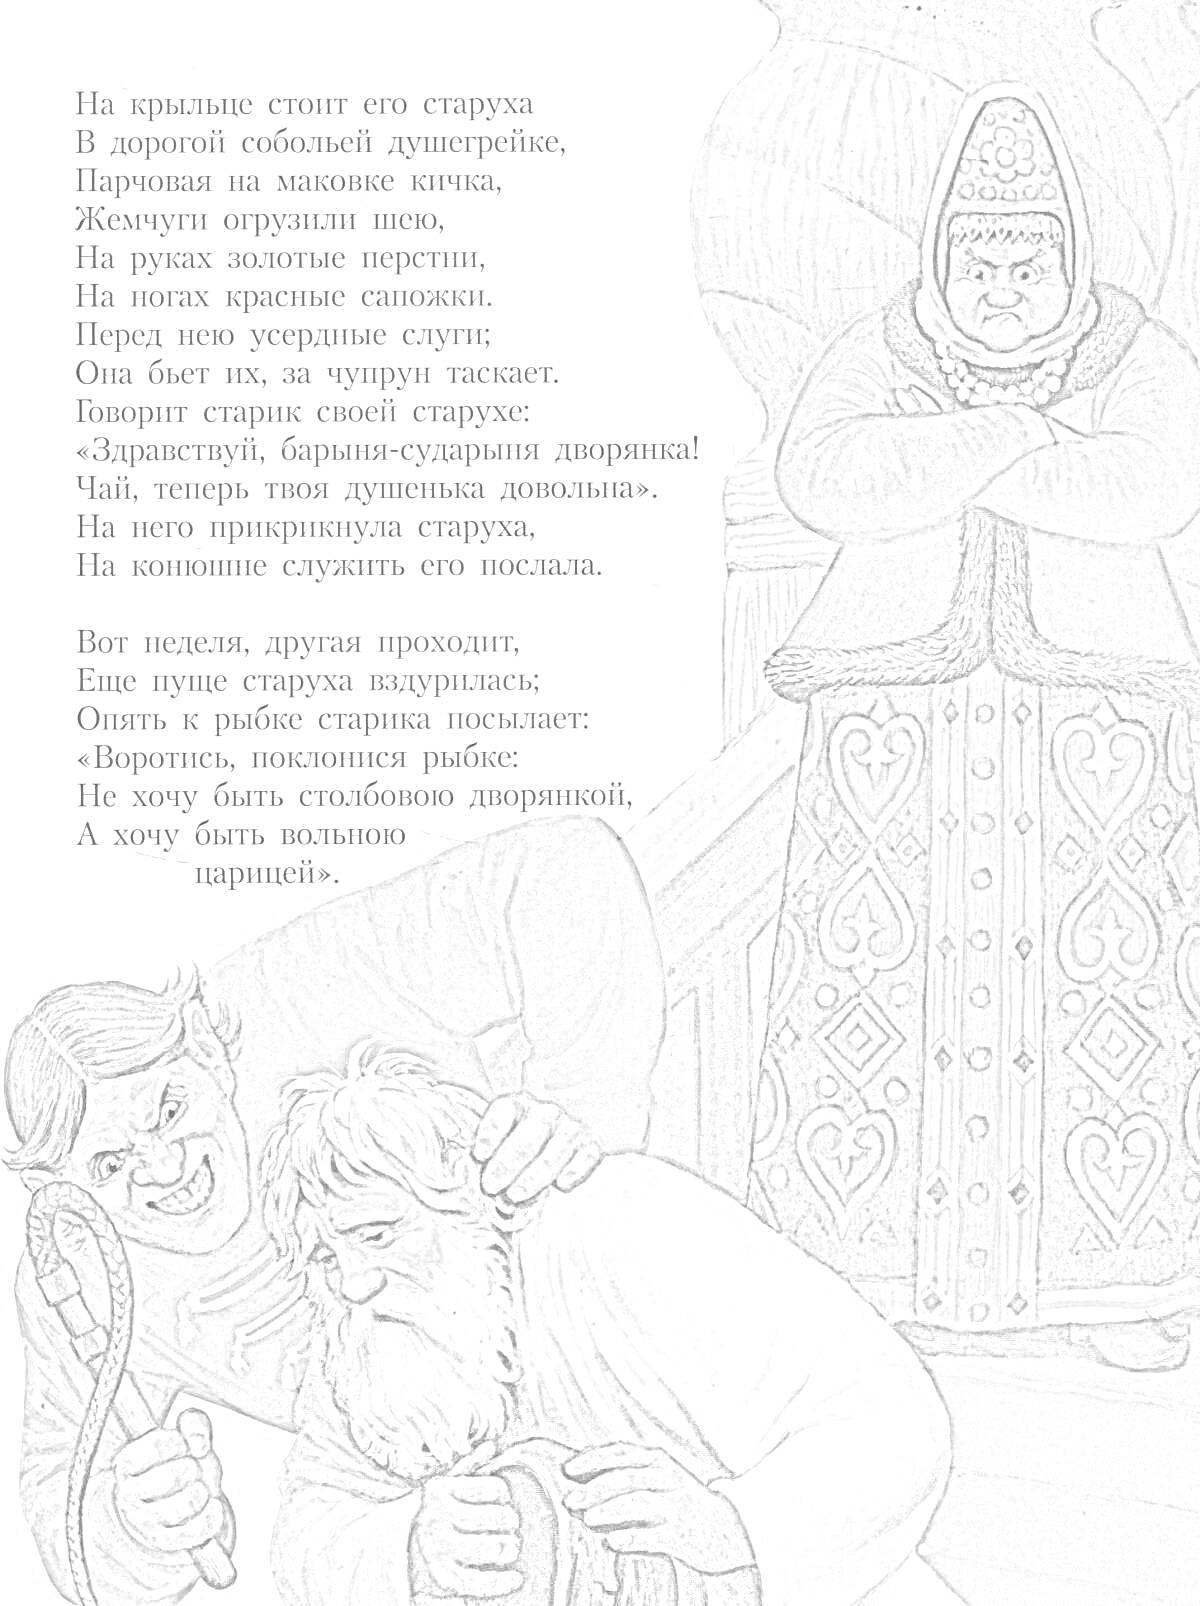 Раскраска Столбовая дворянка с двумя мужчинами на фоне, из которых один держит старика, фон — большое глиняное изделие, текст — стихотворение